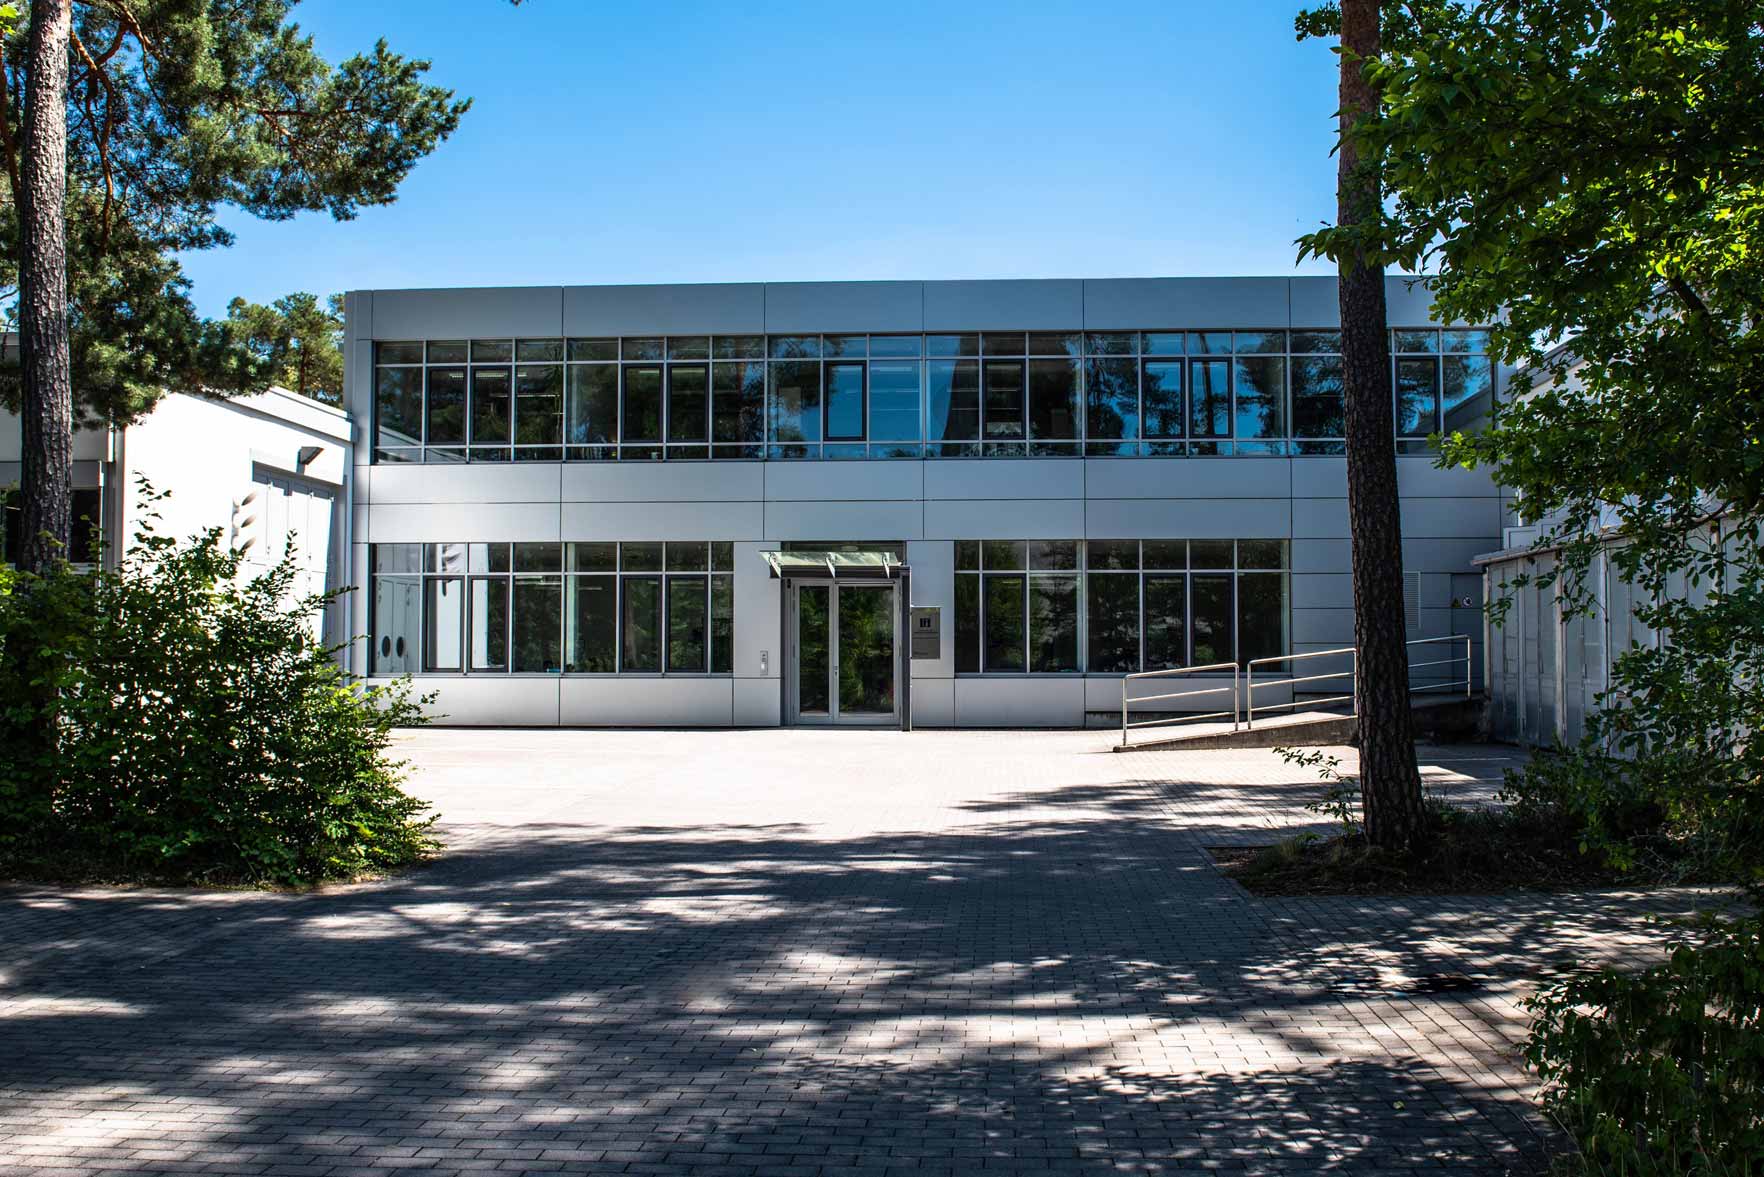 Instituts für Fertigungstechnologie an der Universität Erlangen-Nürnberg. © FAU